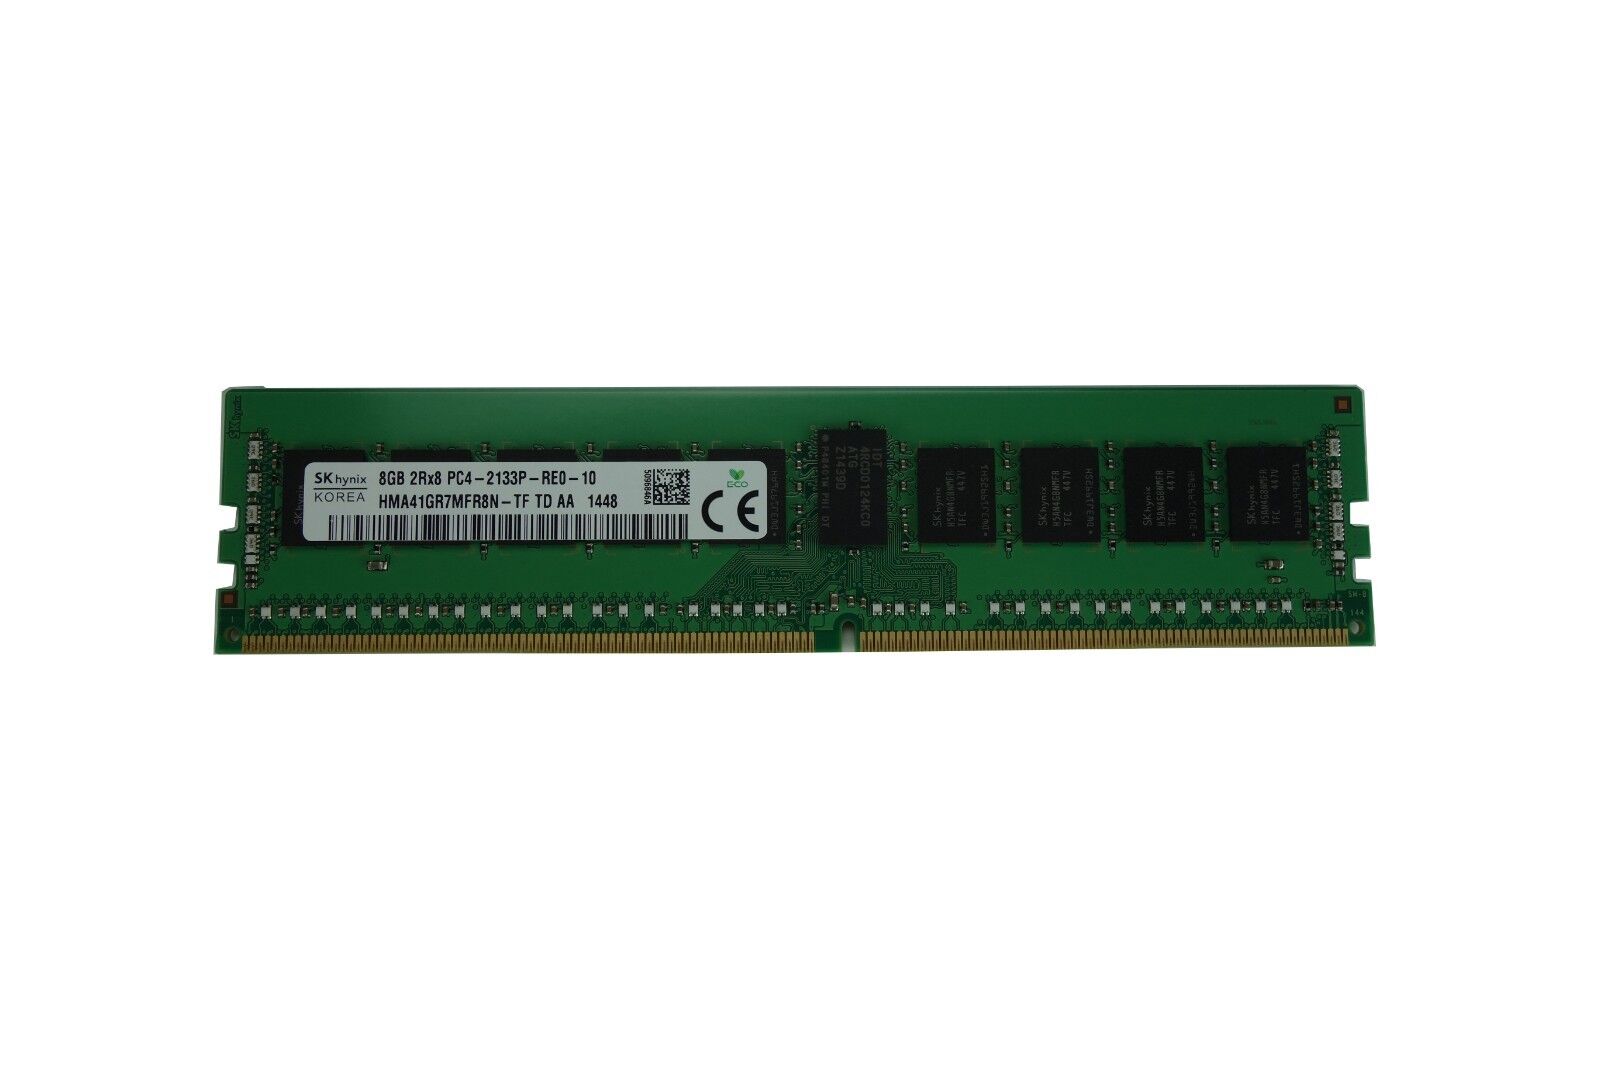 Hynix 8GB DDR4 PC4-2133P 2Rx8 ECC Registered DIMM HMA41GR7MFR8N-TF